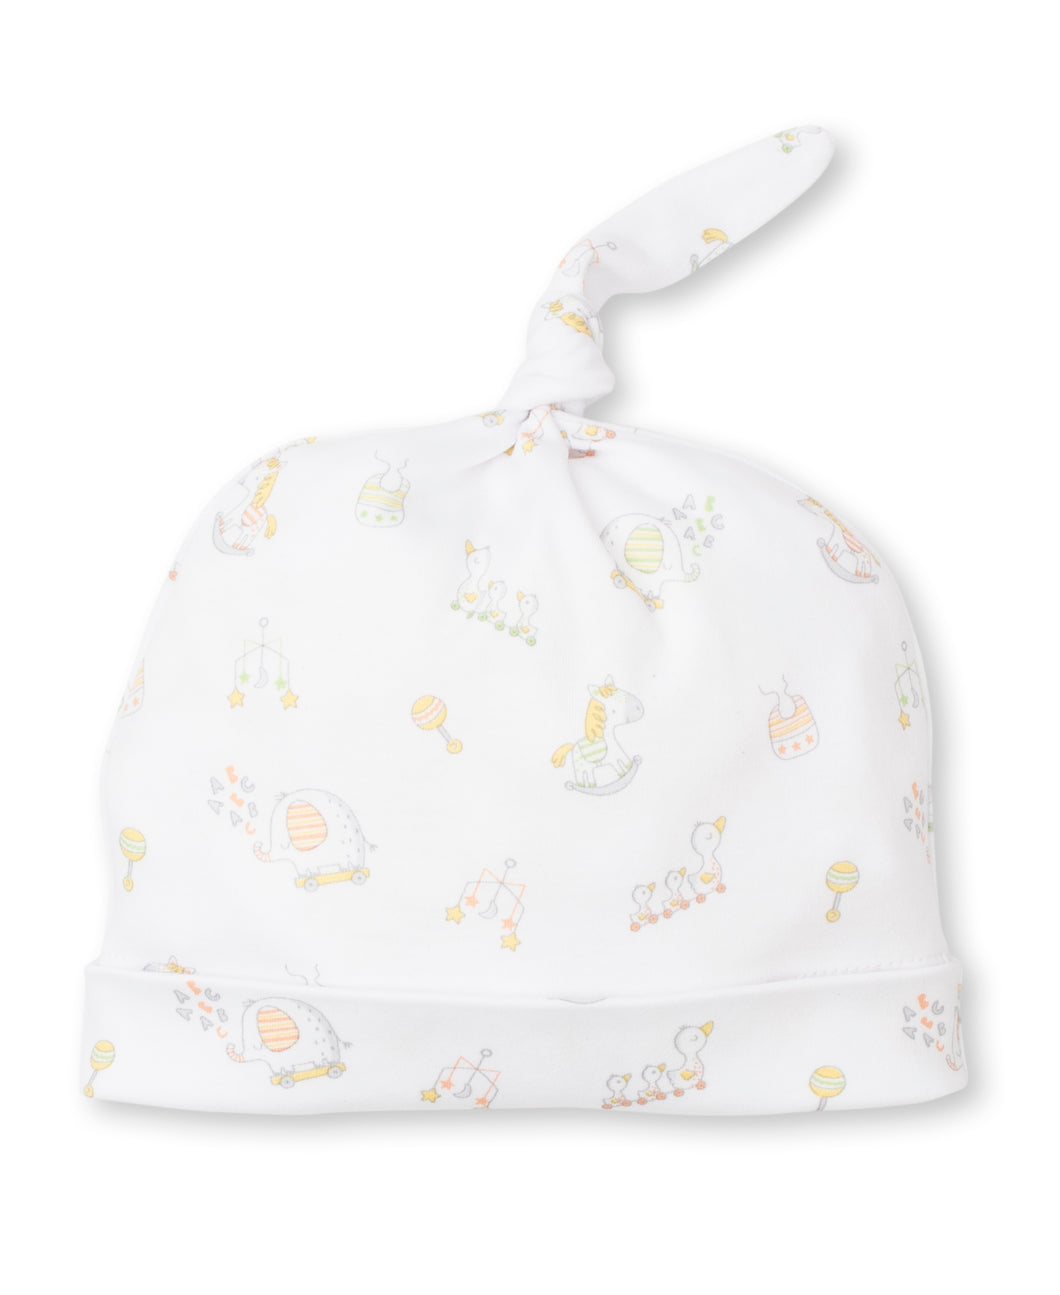 Baby ABCs Hat